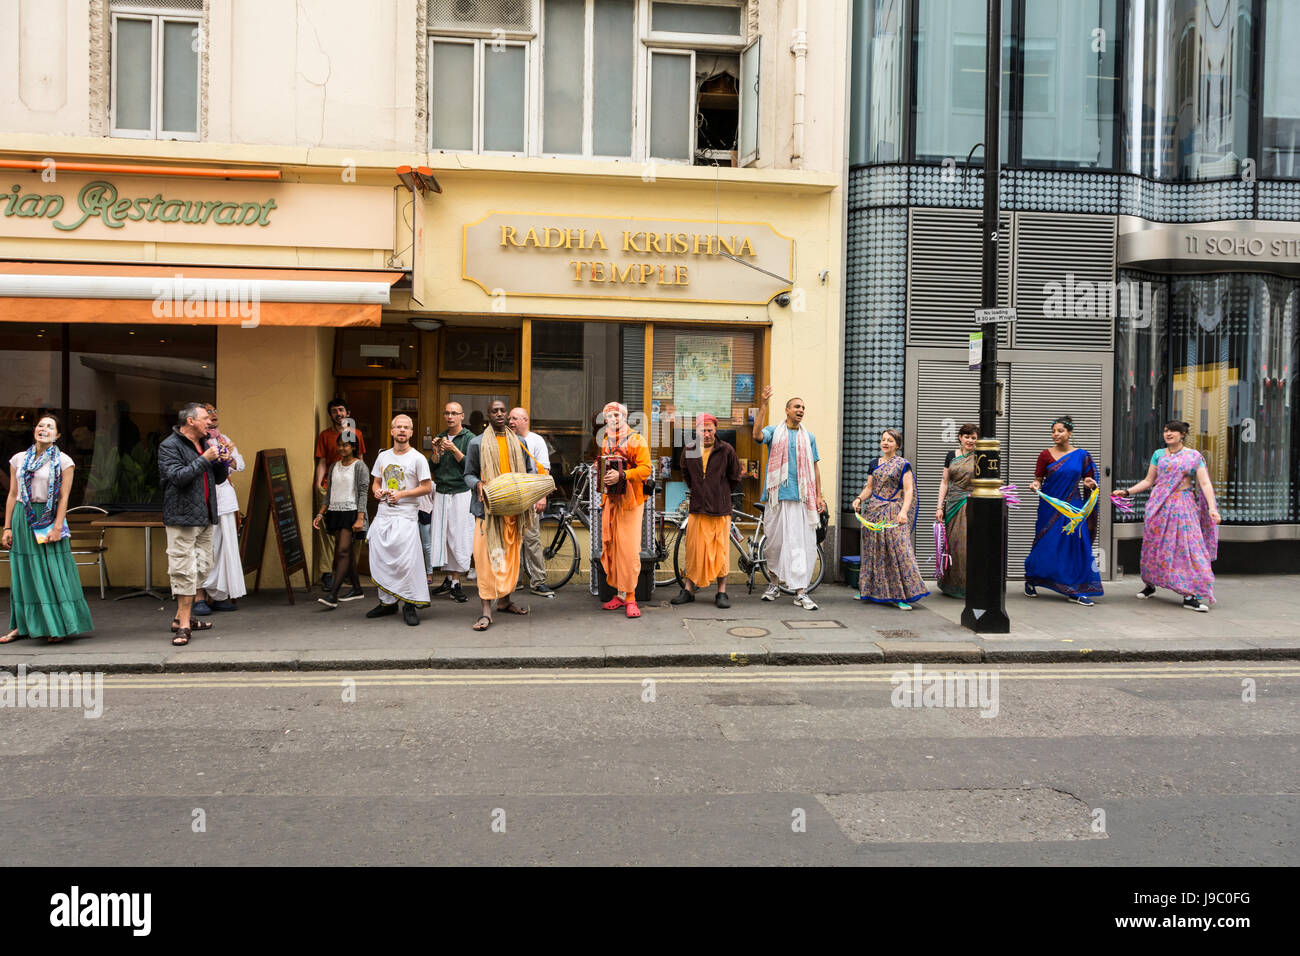 Anhänger, tanzen und singen außerhalb der Radha-Krishna-Tempel in Soho Street, London, UK Stockfoto